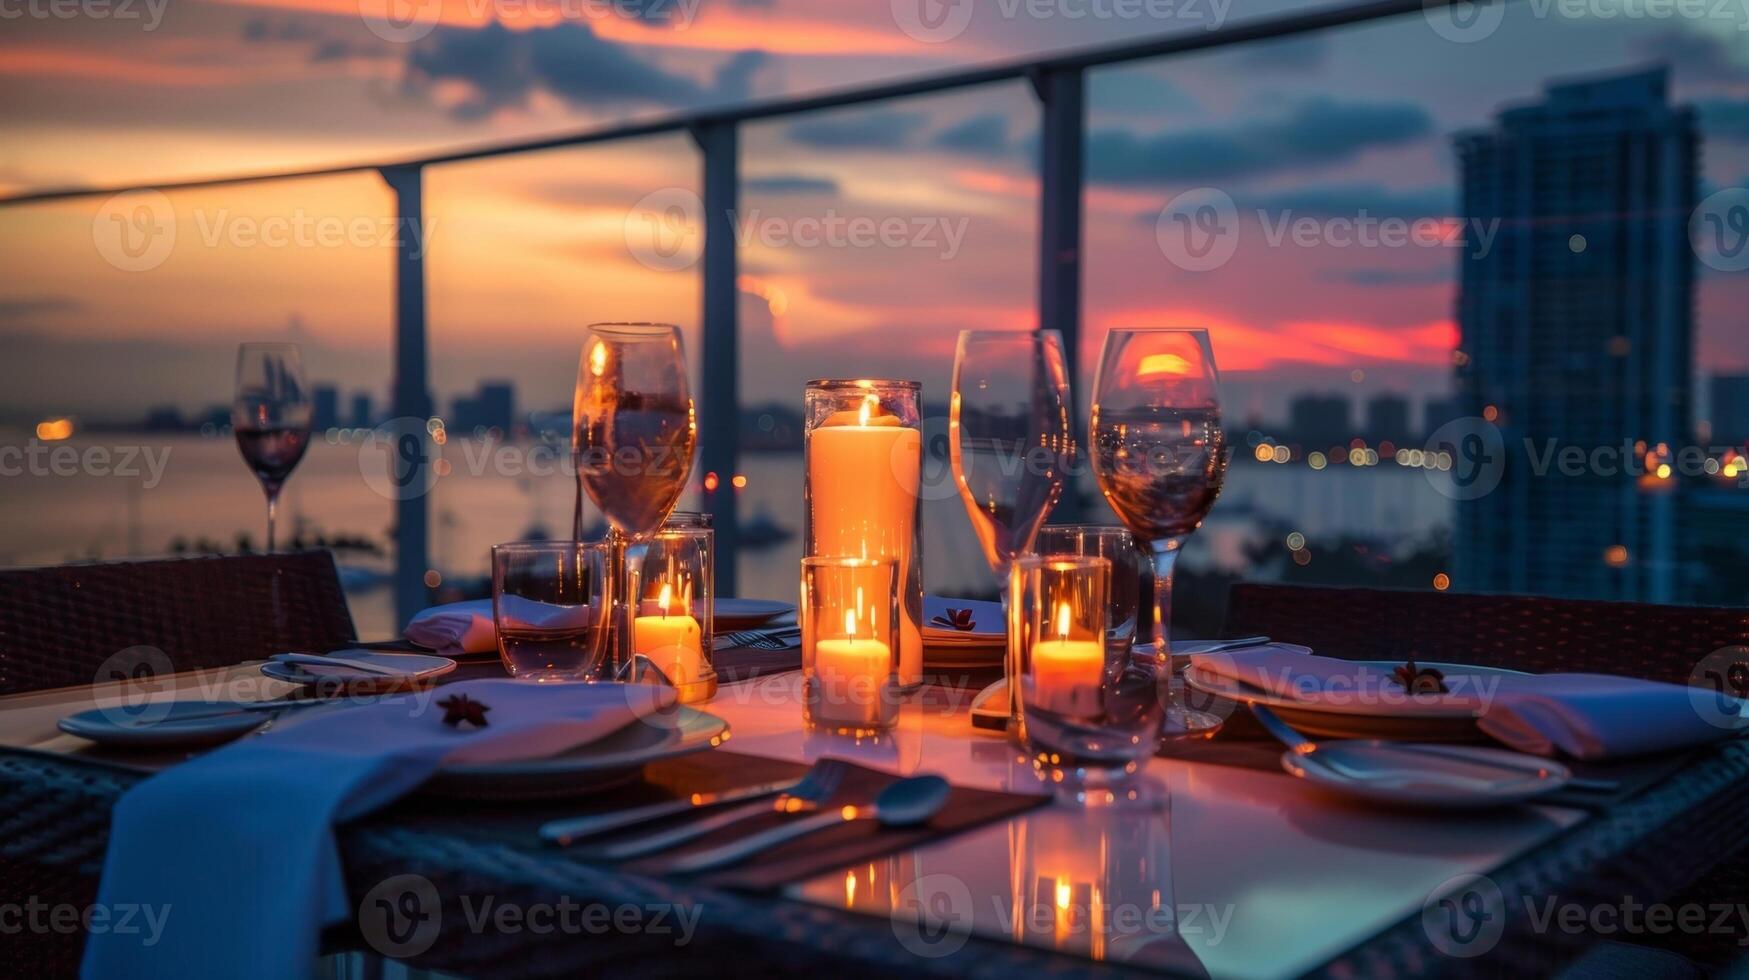 comme le Soleil ensembles plus de le ville le bougies viens à la vie éclairant le table avec un enchanteur lumière du feu. 2d plat dessin animé photo